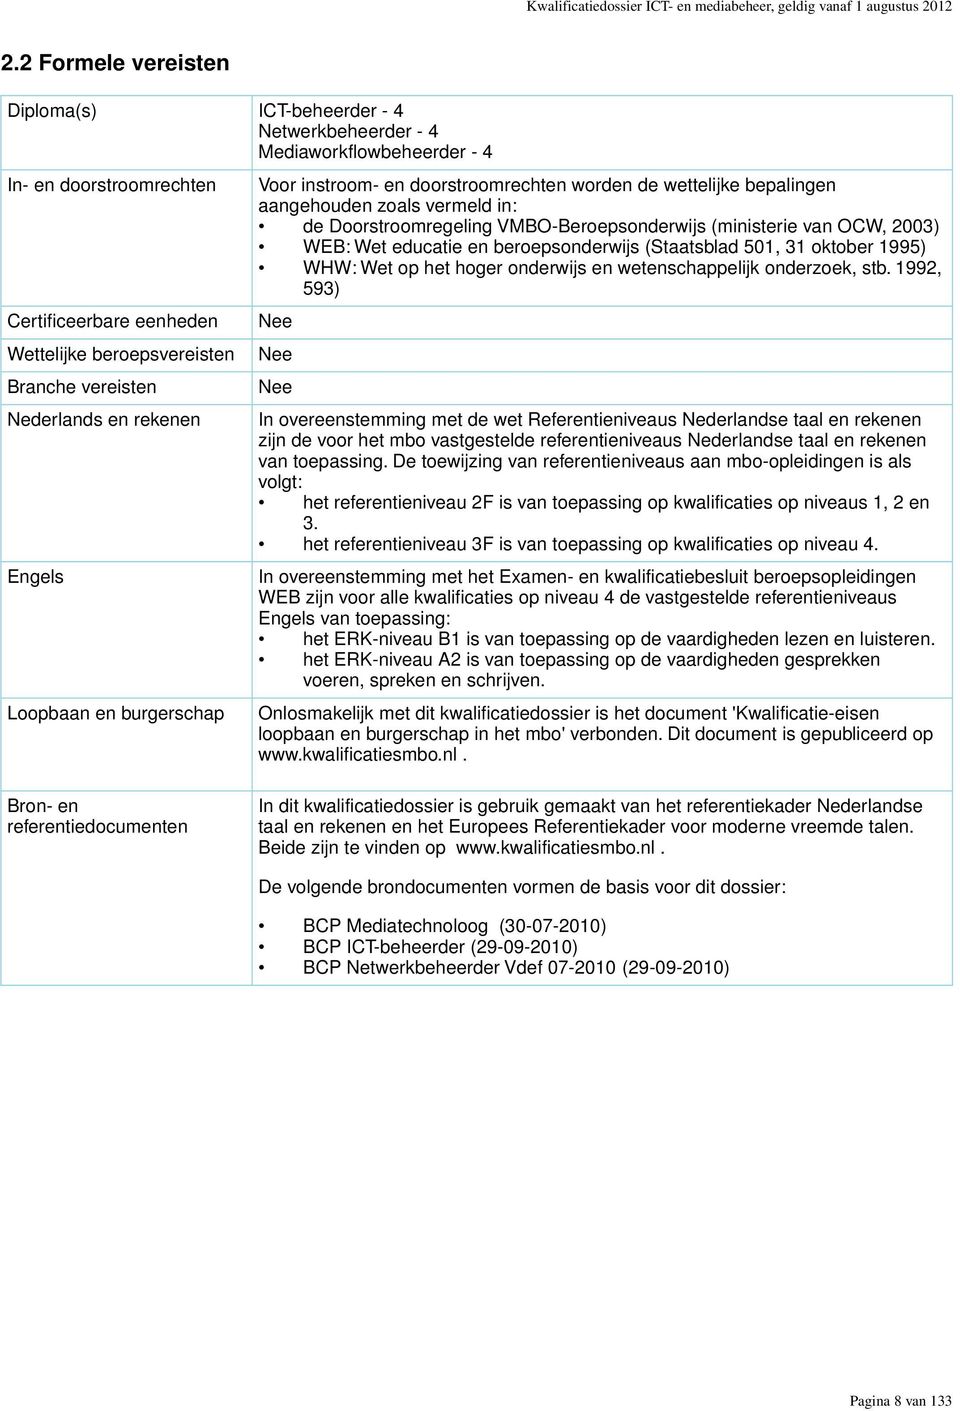 Nederlands en rekenen Engels Loopbaan en burgerschap Voor instroom- en doorstroomrechten worden de wettelijke bepalingen aangehouden zoals vermeld in: de Doorstroomregeling VMBO-Beroepsonderwijs